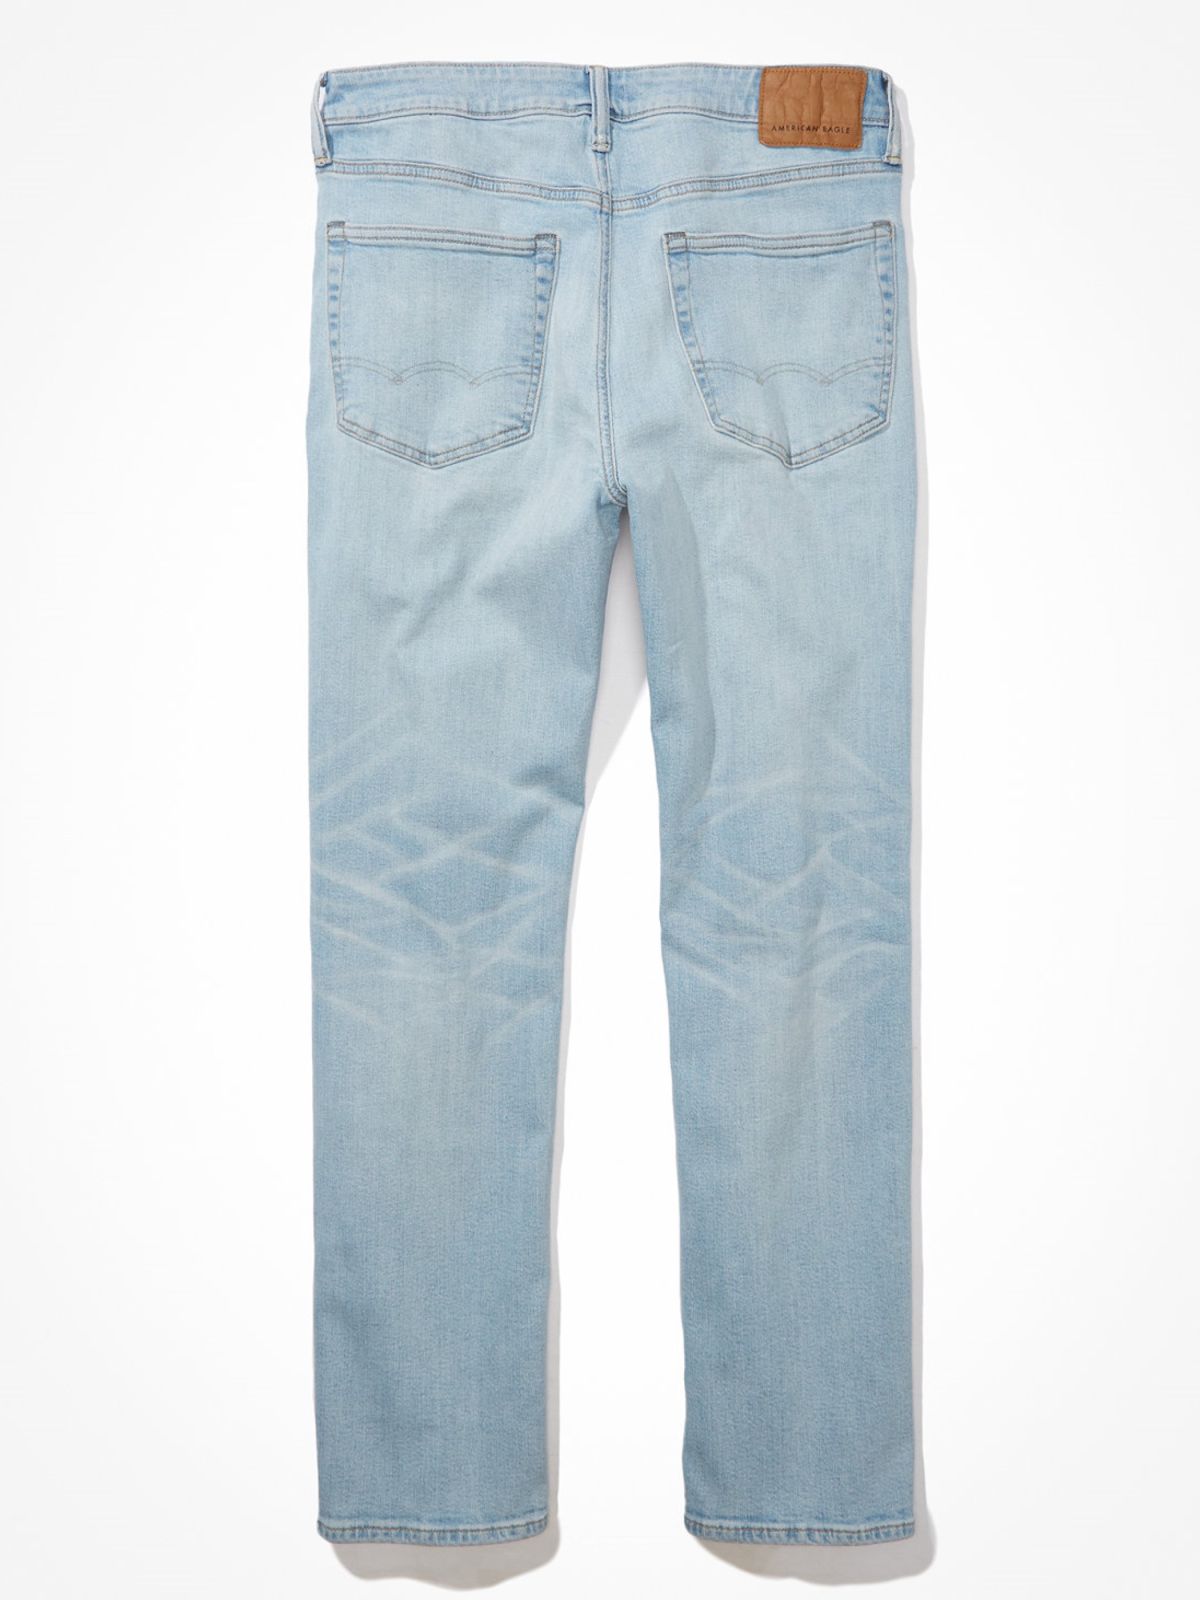  מכנסי ג'ינס בגזרה ישרה של AMERICAN EAGLE